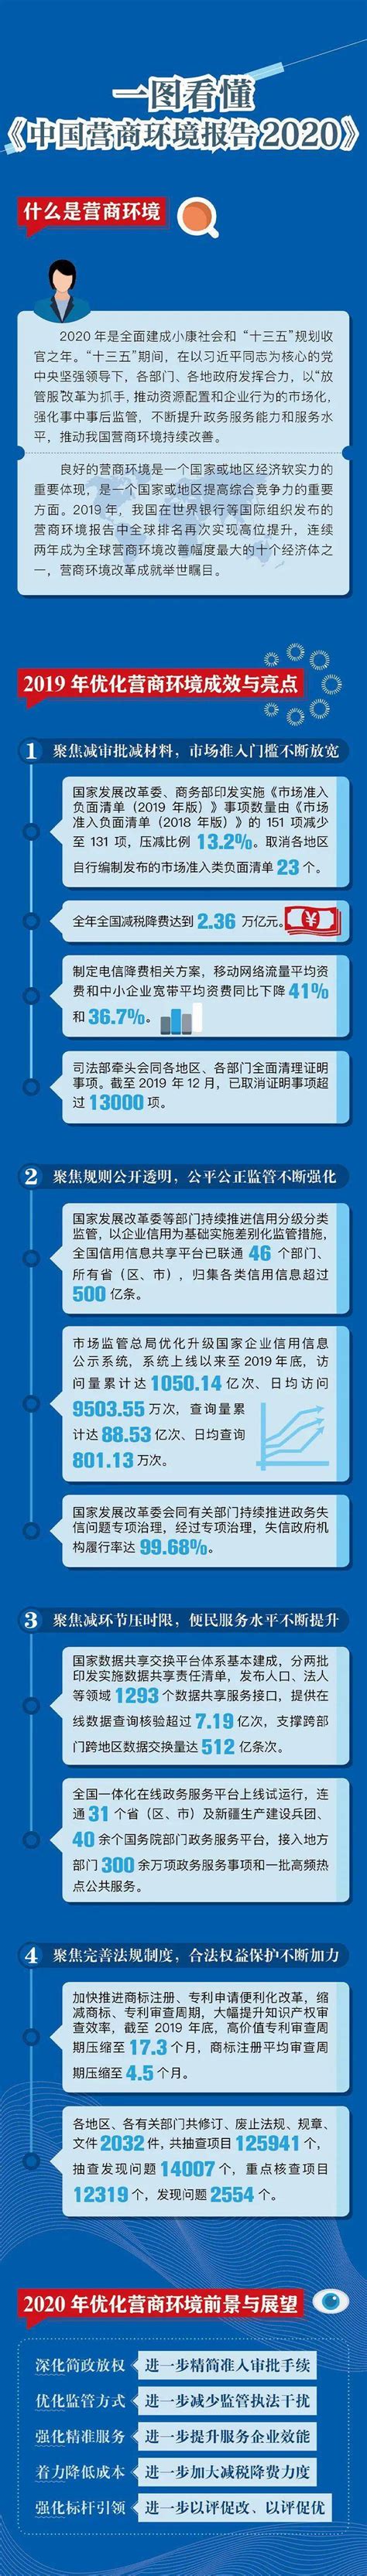 世界银行全球营商环境报告2020：中国排名跃升至第31位 - 城市中国网